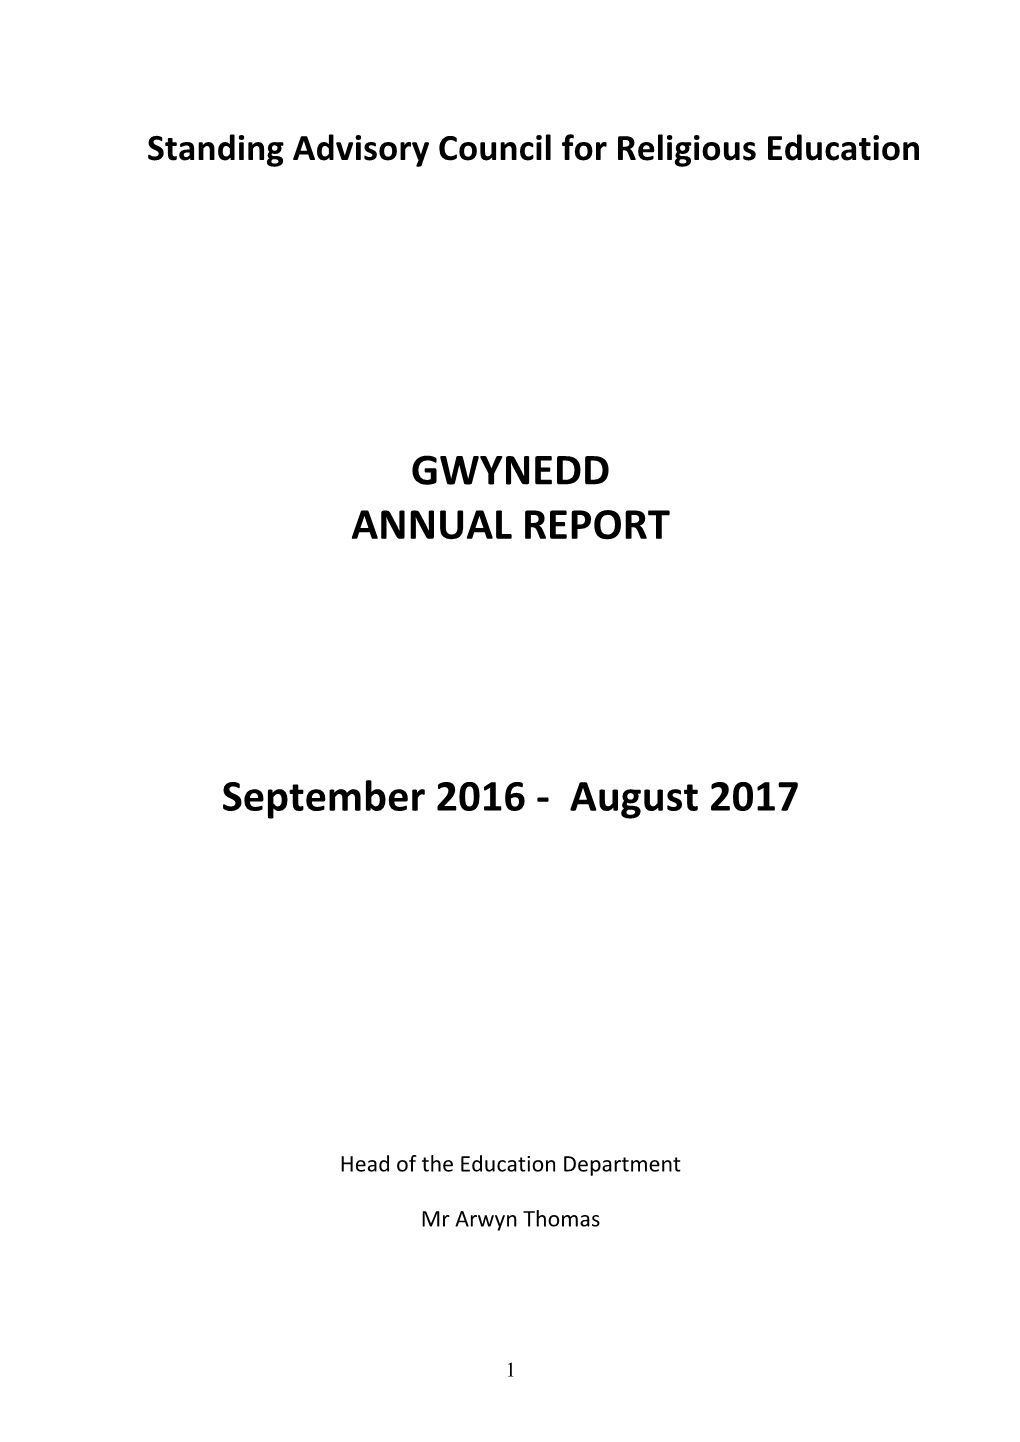 Gwynedd Sacre Annual Report 2016